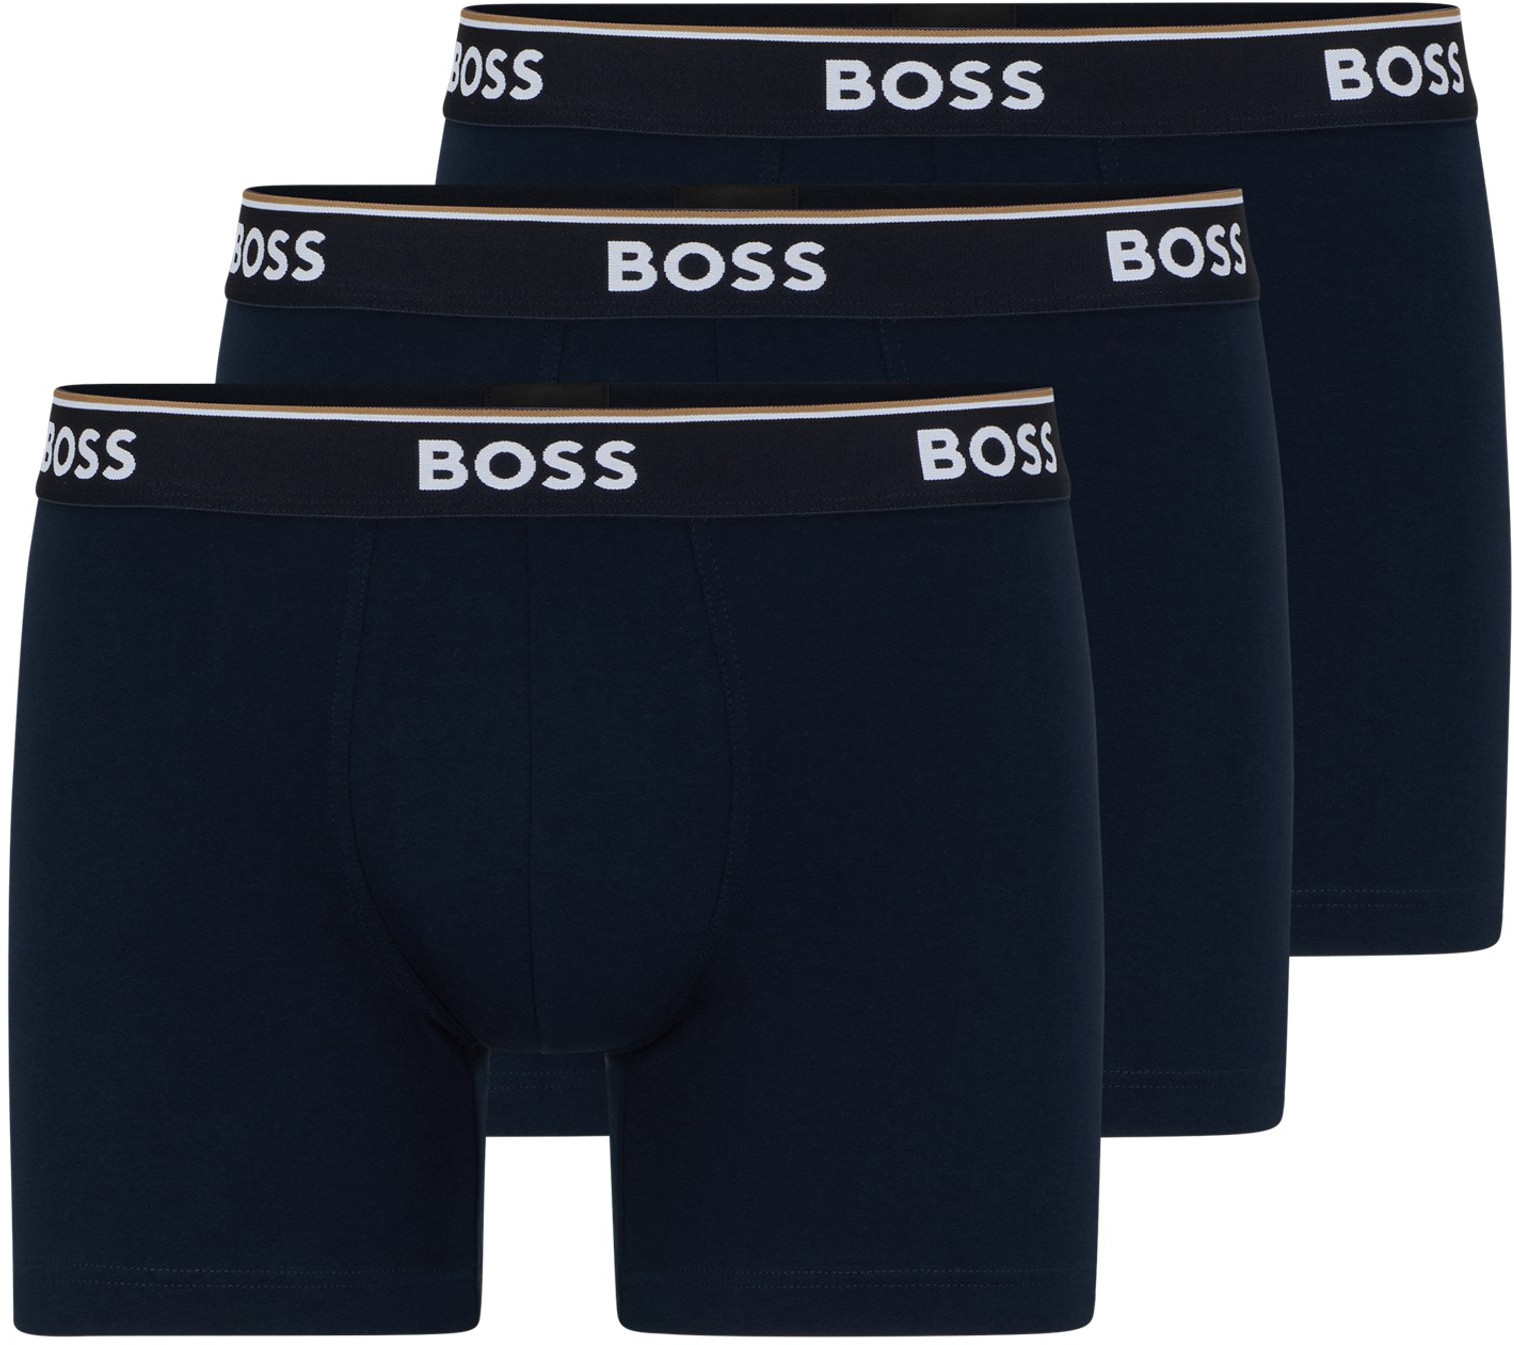 Hugo Boss 3 PACK - pánske boxerky BOSS 50475282-480 XXL